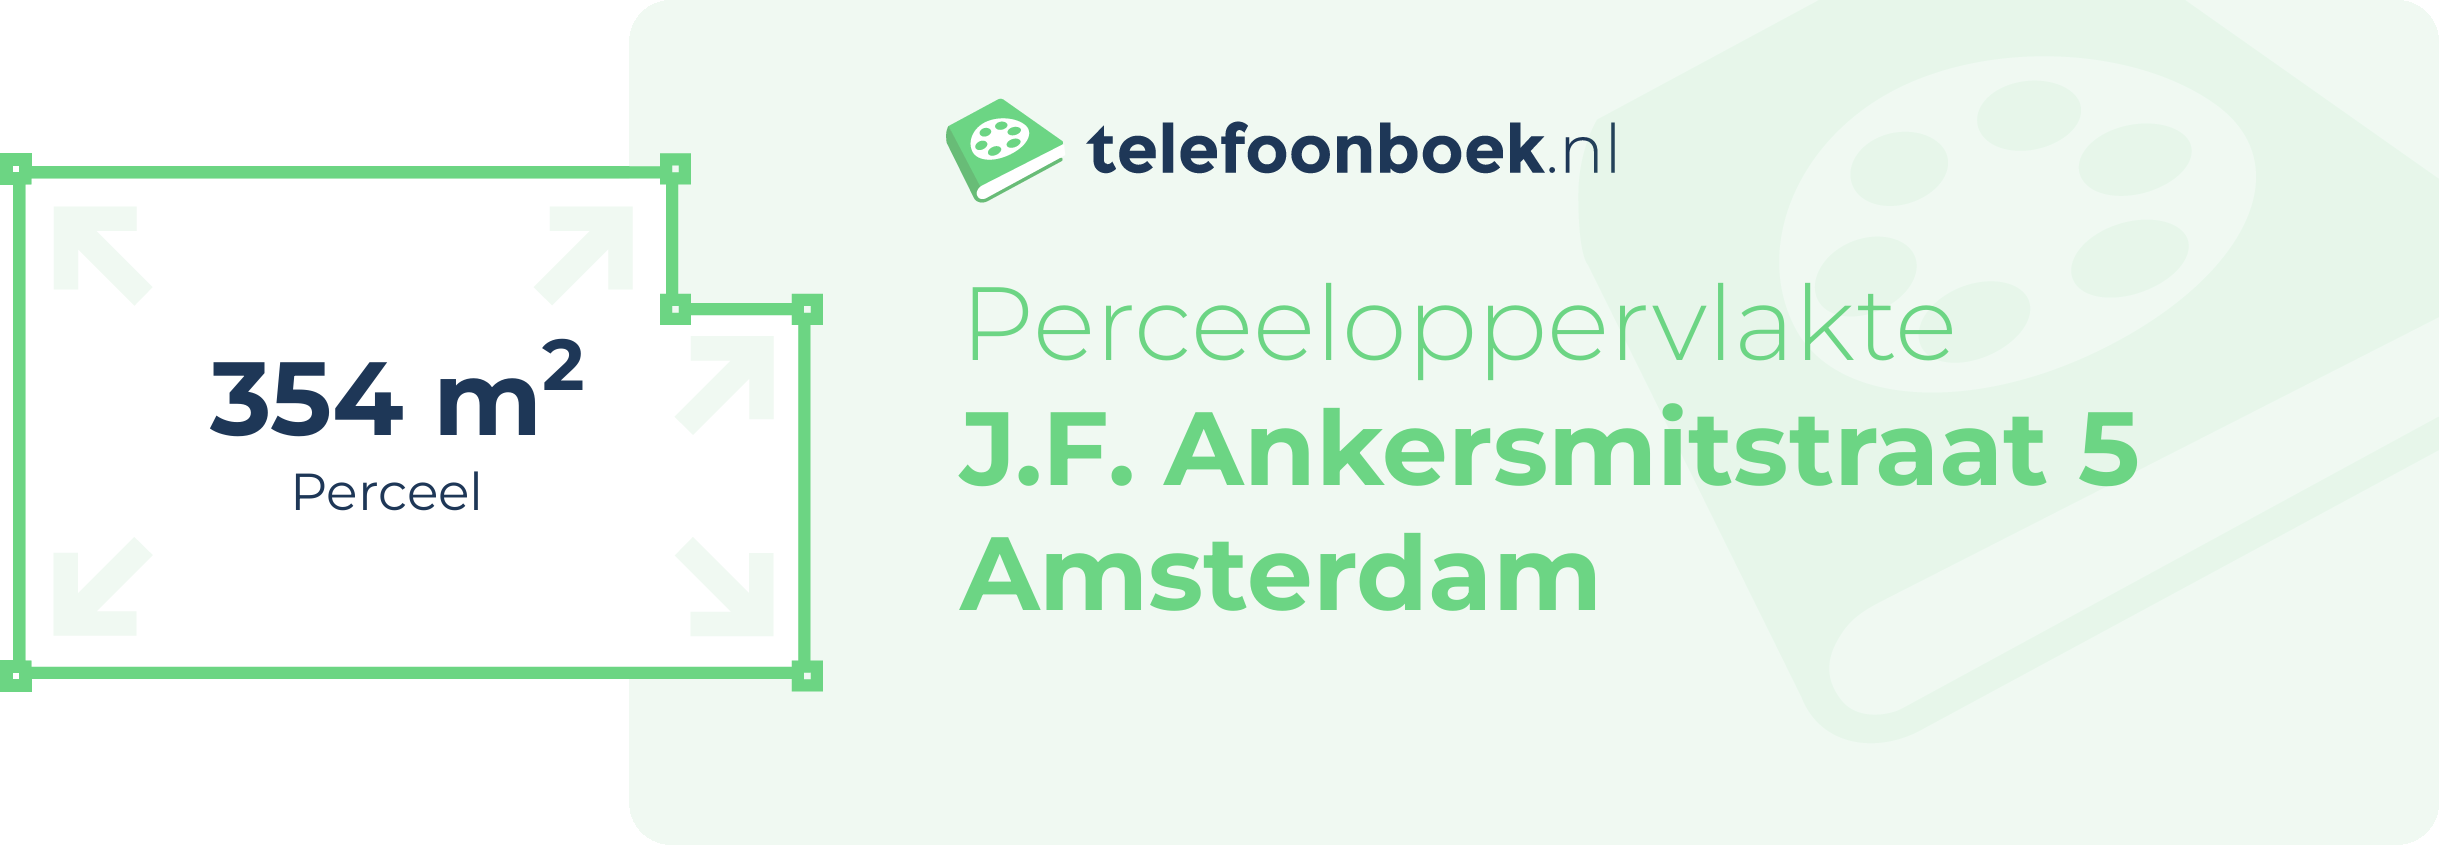 Perceeloppervlakte J.F. Ankersmitstraat 5 Amsterdam